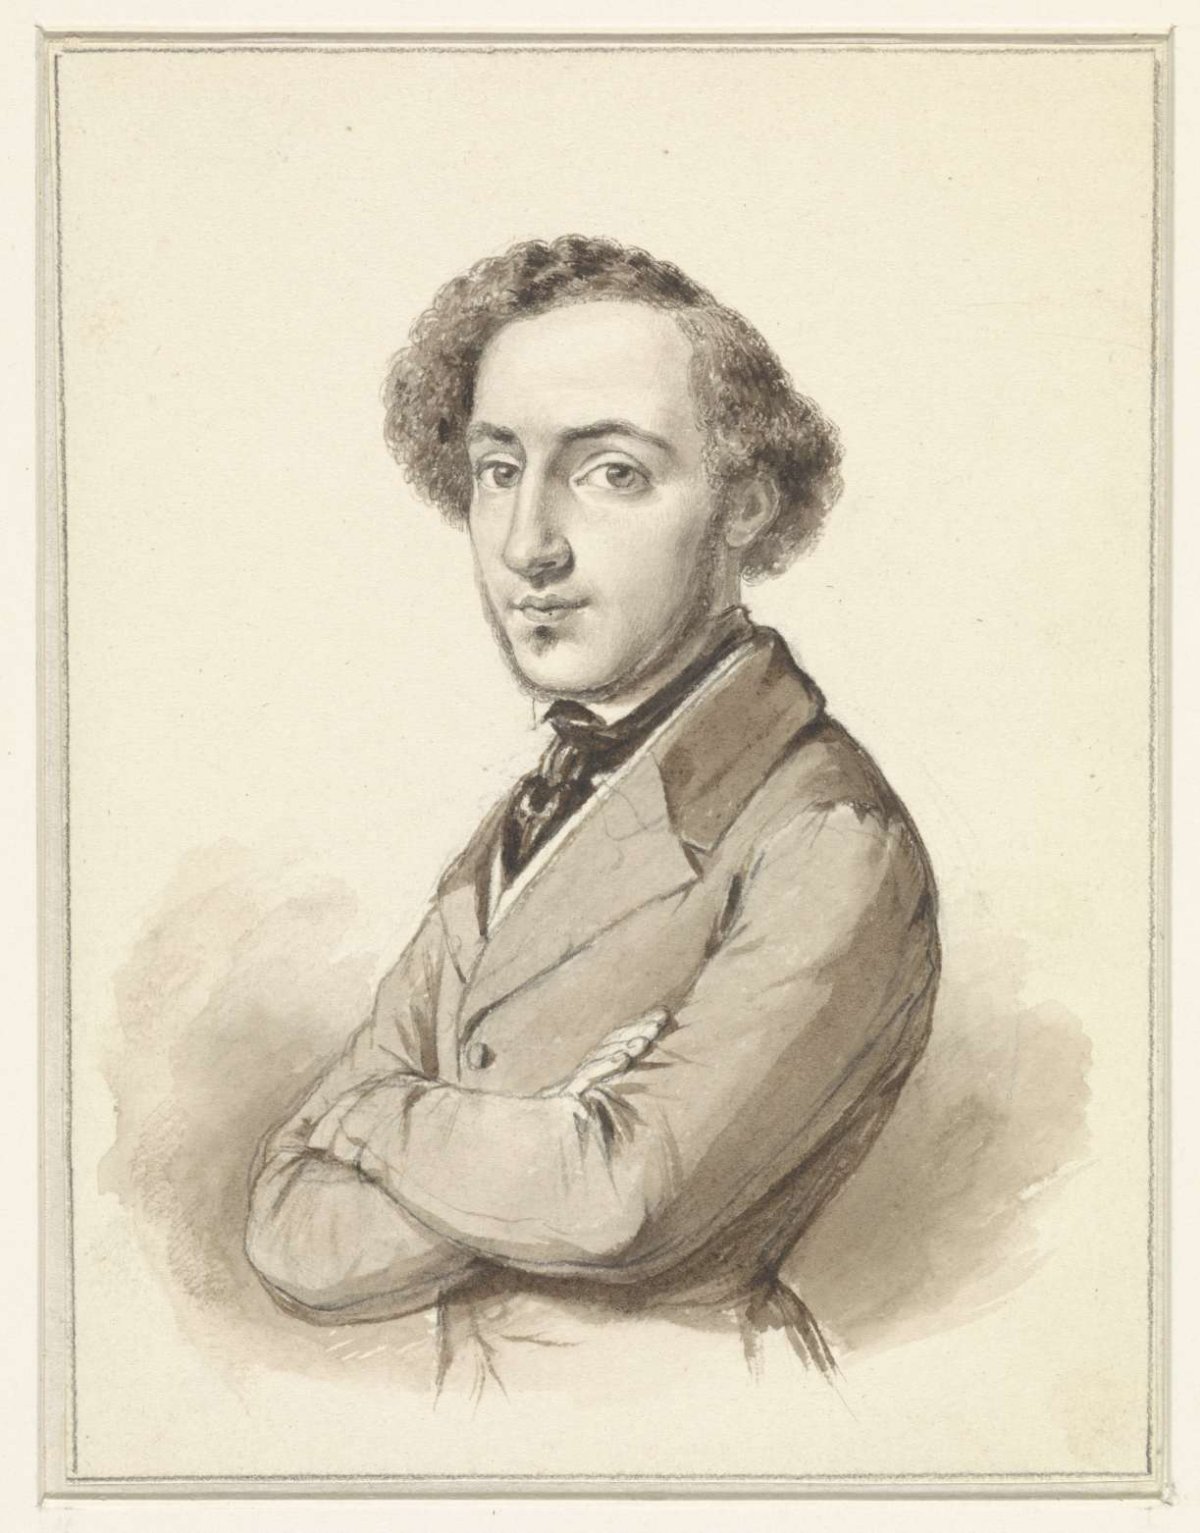 Self-portrait of Moritz Calisch, Moritz Calisch, 1840 - 1850